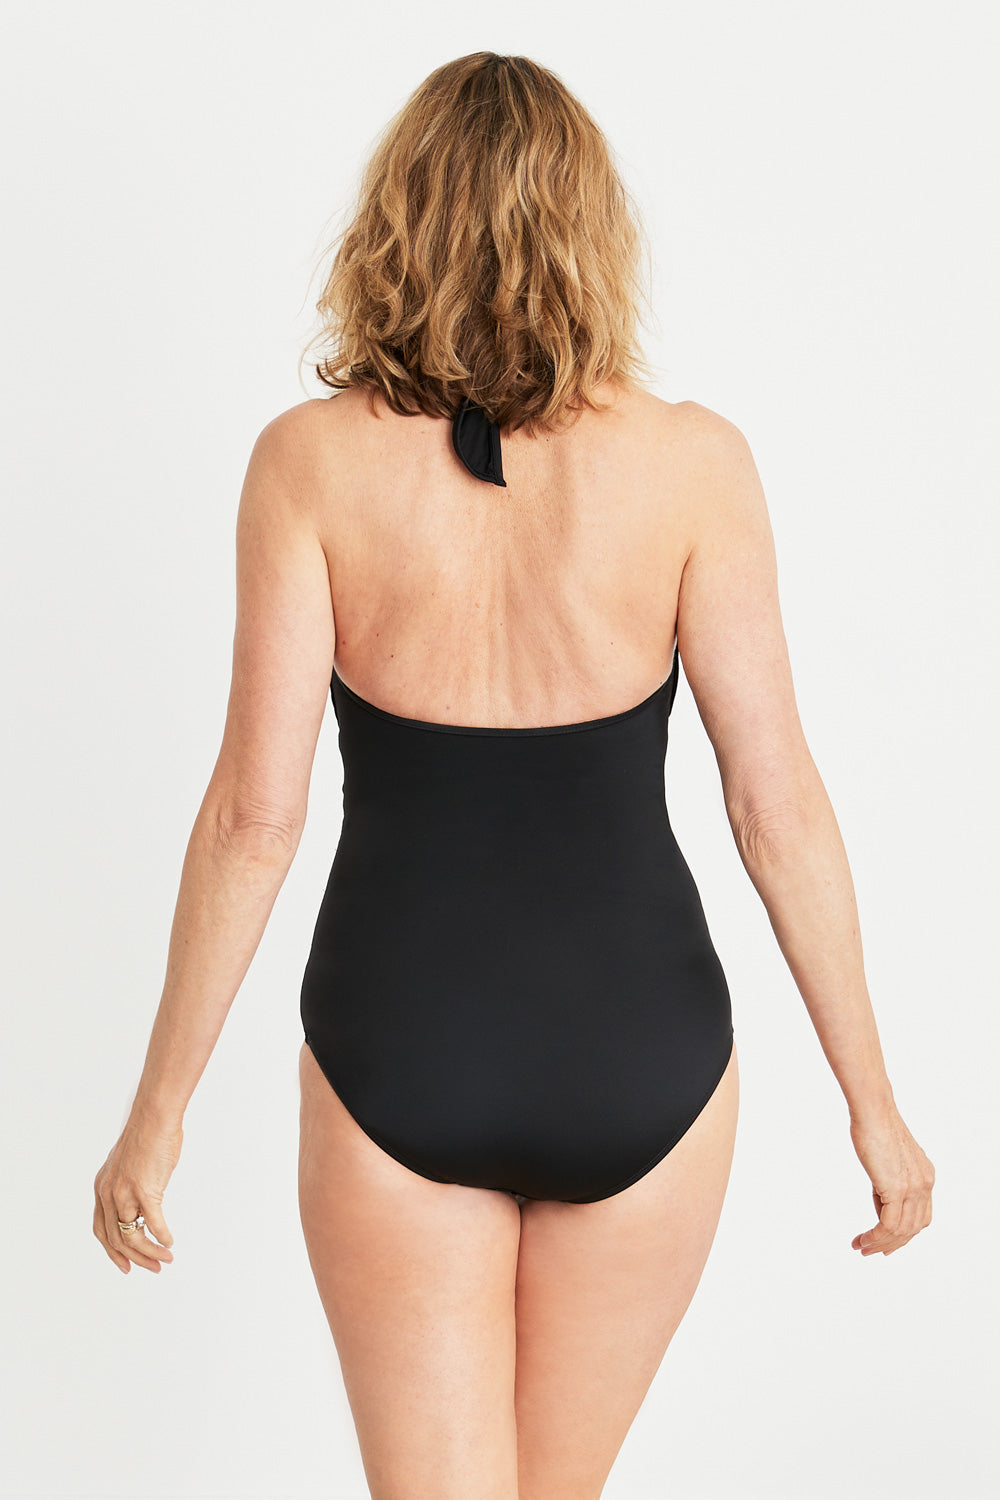 Women's Tummy Control Swimsuit - Patty Black One Piece – Hermoza